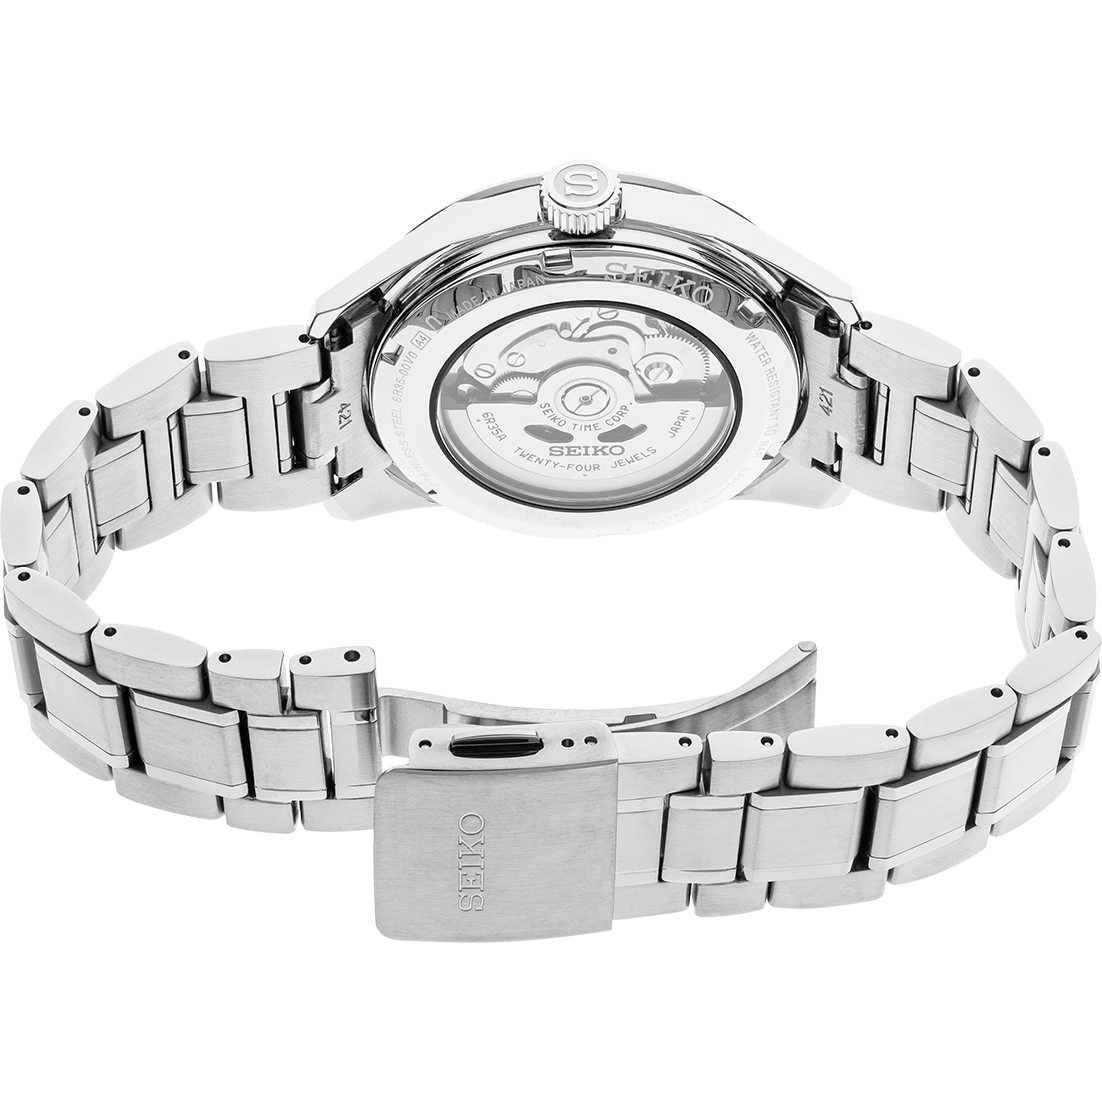 Seiko Presage SPB203 Black Dial Automatic Watch | Skeie's Jewelers